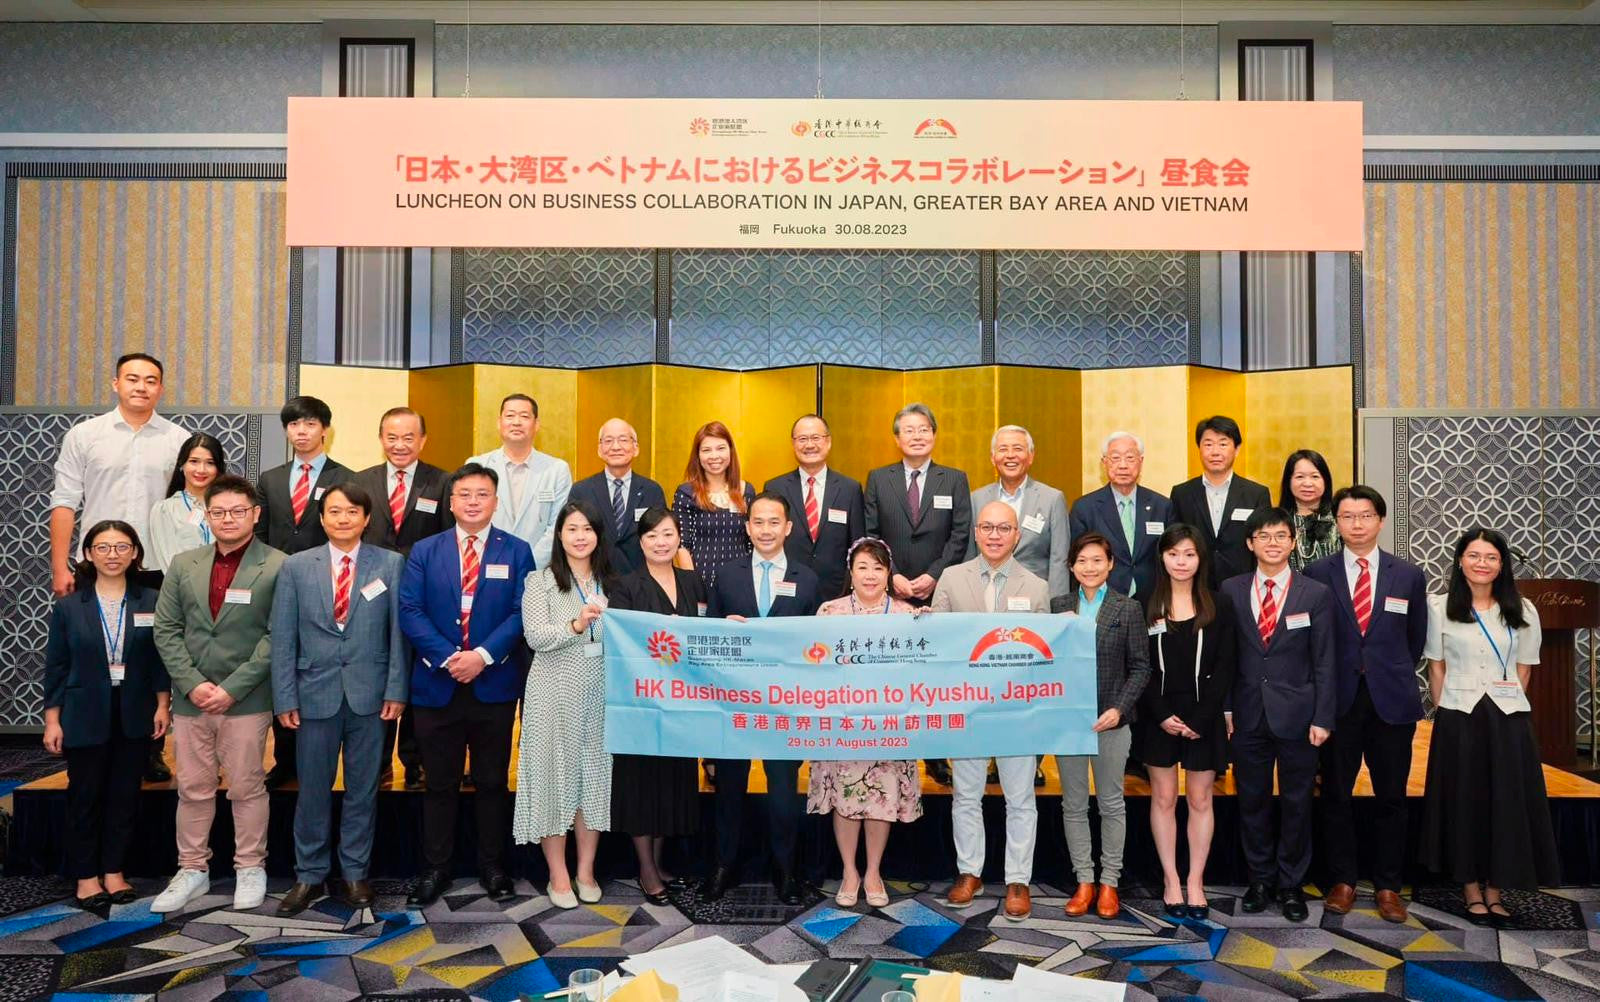 Hong Kong E-commerce leider versterkt regionale banden tijdens historisch bezoek aan Kyushu